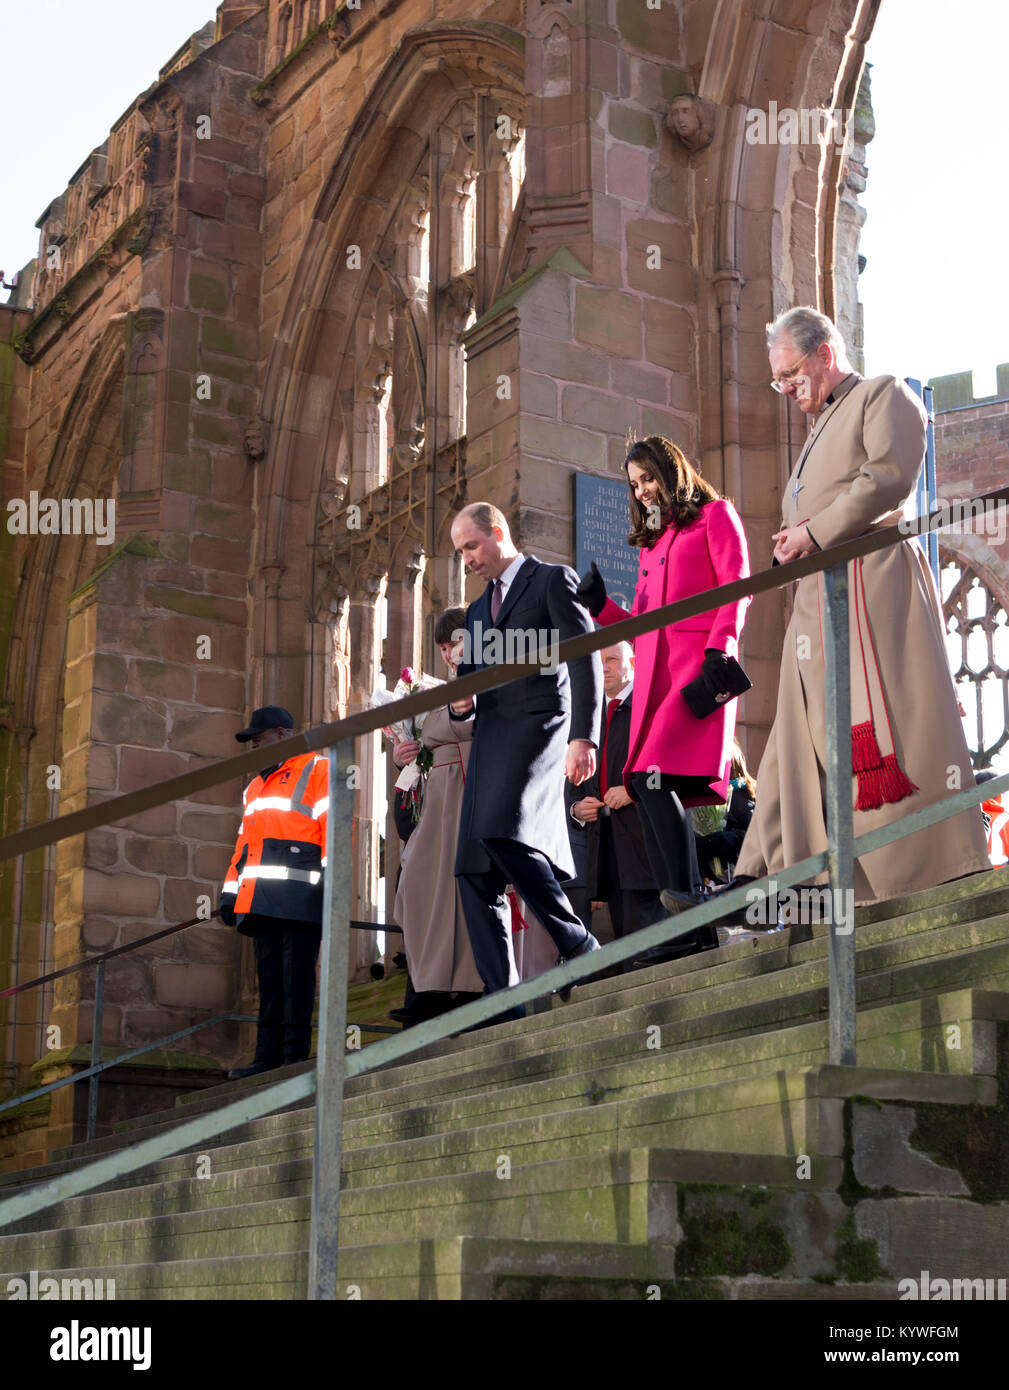 16 gennaio 2018. Coventry, West Midlands, Inghilterra, Regno Unito. Il Duca e la Duchessa di Cambridge scendono i passaggi tra le vecchie e le nuove cattedrali come parte della loro royal visita alla città di Coventry. Foto Stock